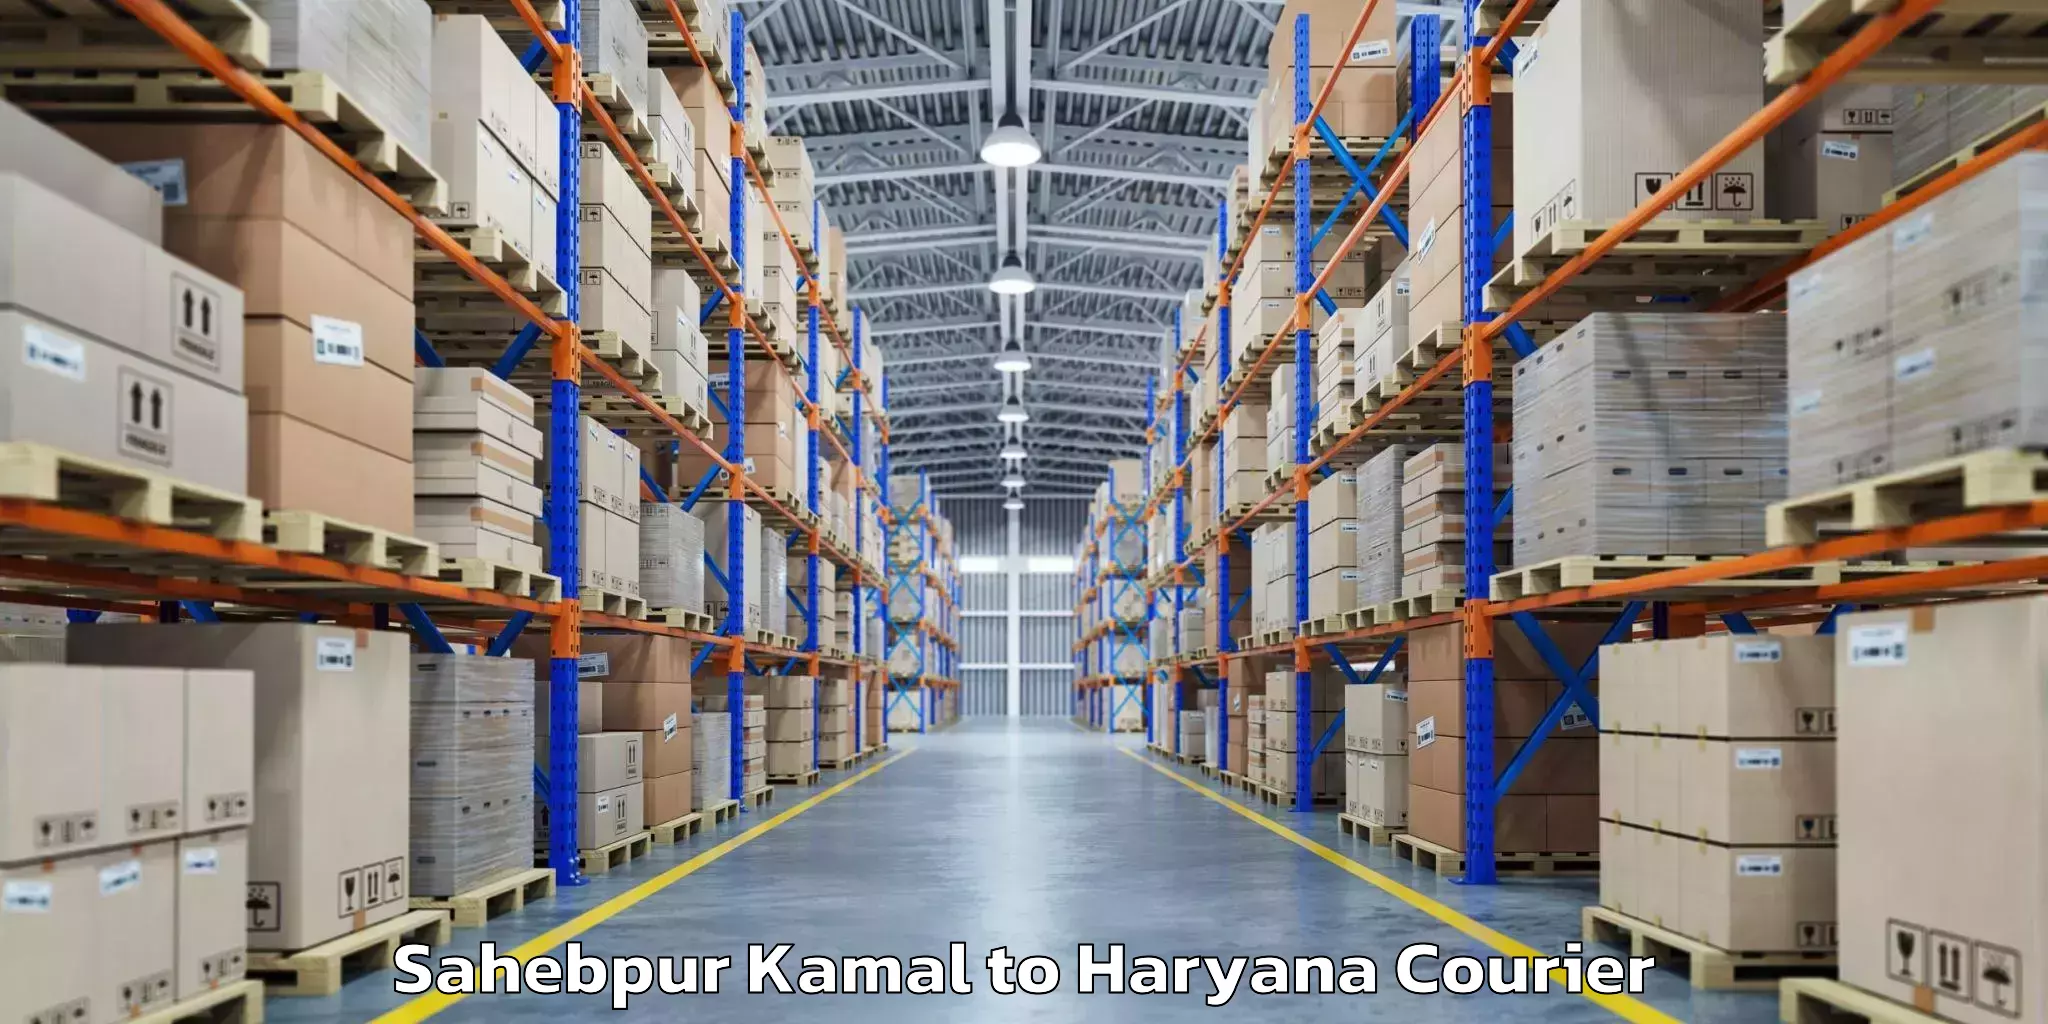 Baggage shipping schedule Sahebpur Kamal to Panchkula